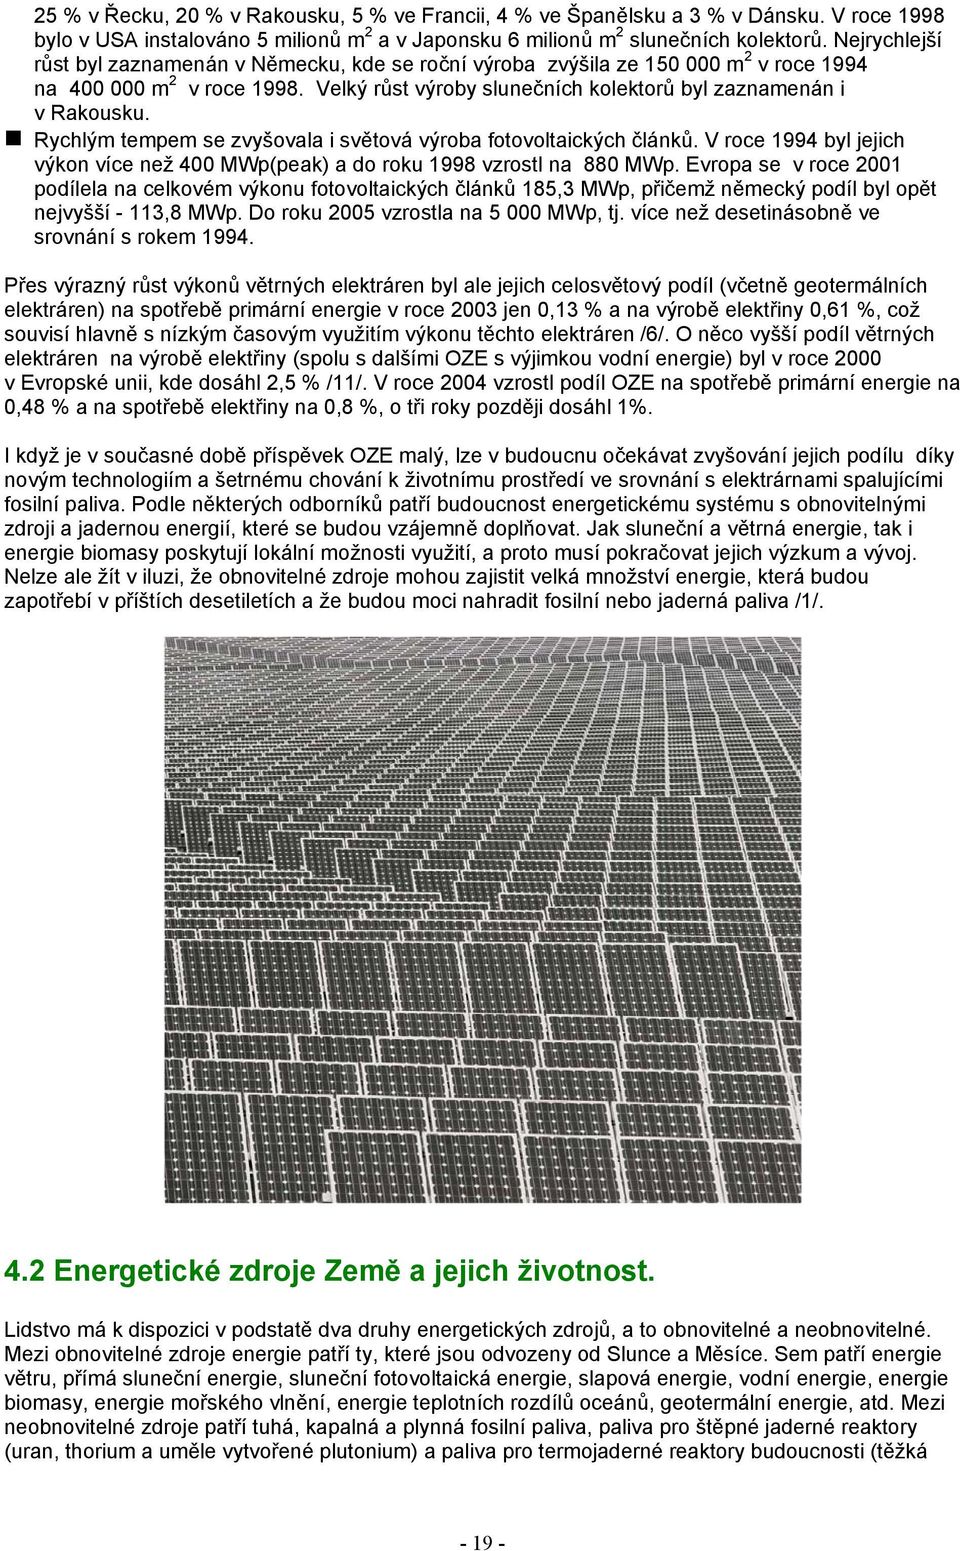 Rychlým tempem se zvyšovala i světová výroba fotovoltaických článků. V roce 1994 byl jejich výkon více než 400 MWp(peak) a do roku 1998 vzrostl na 880 MWp.